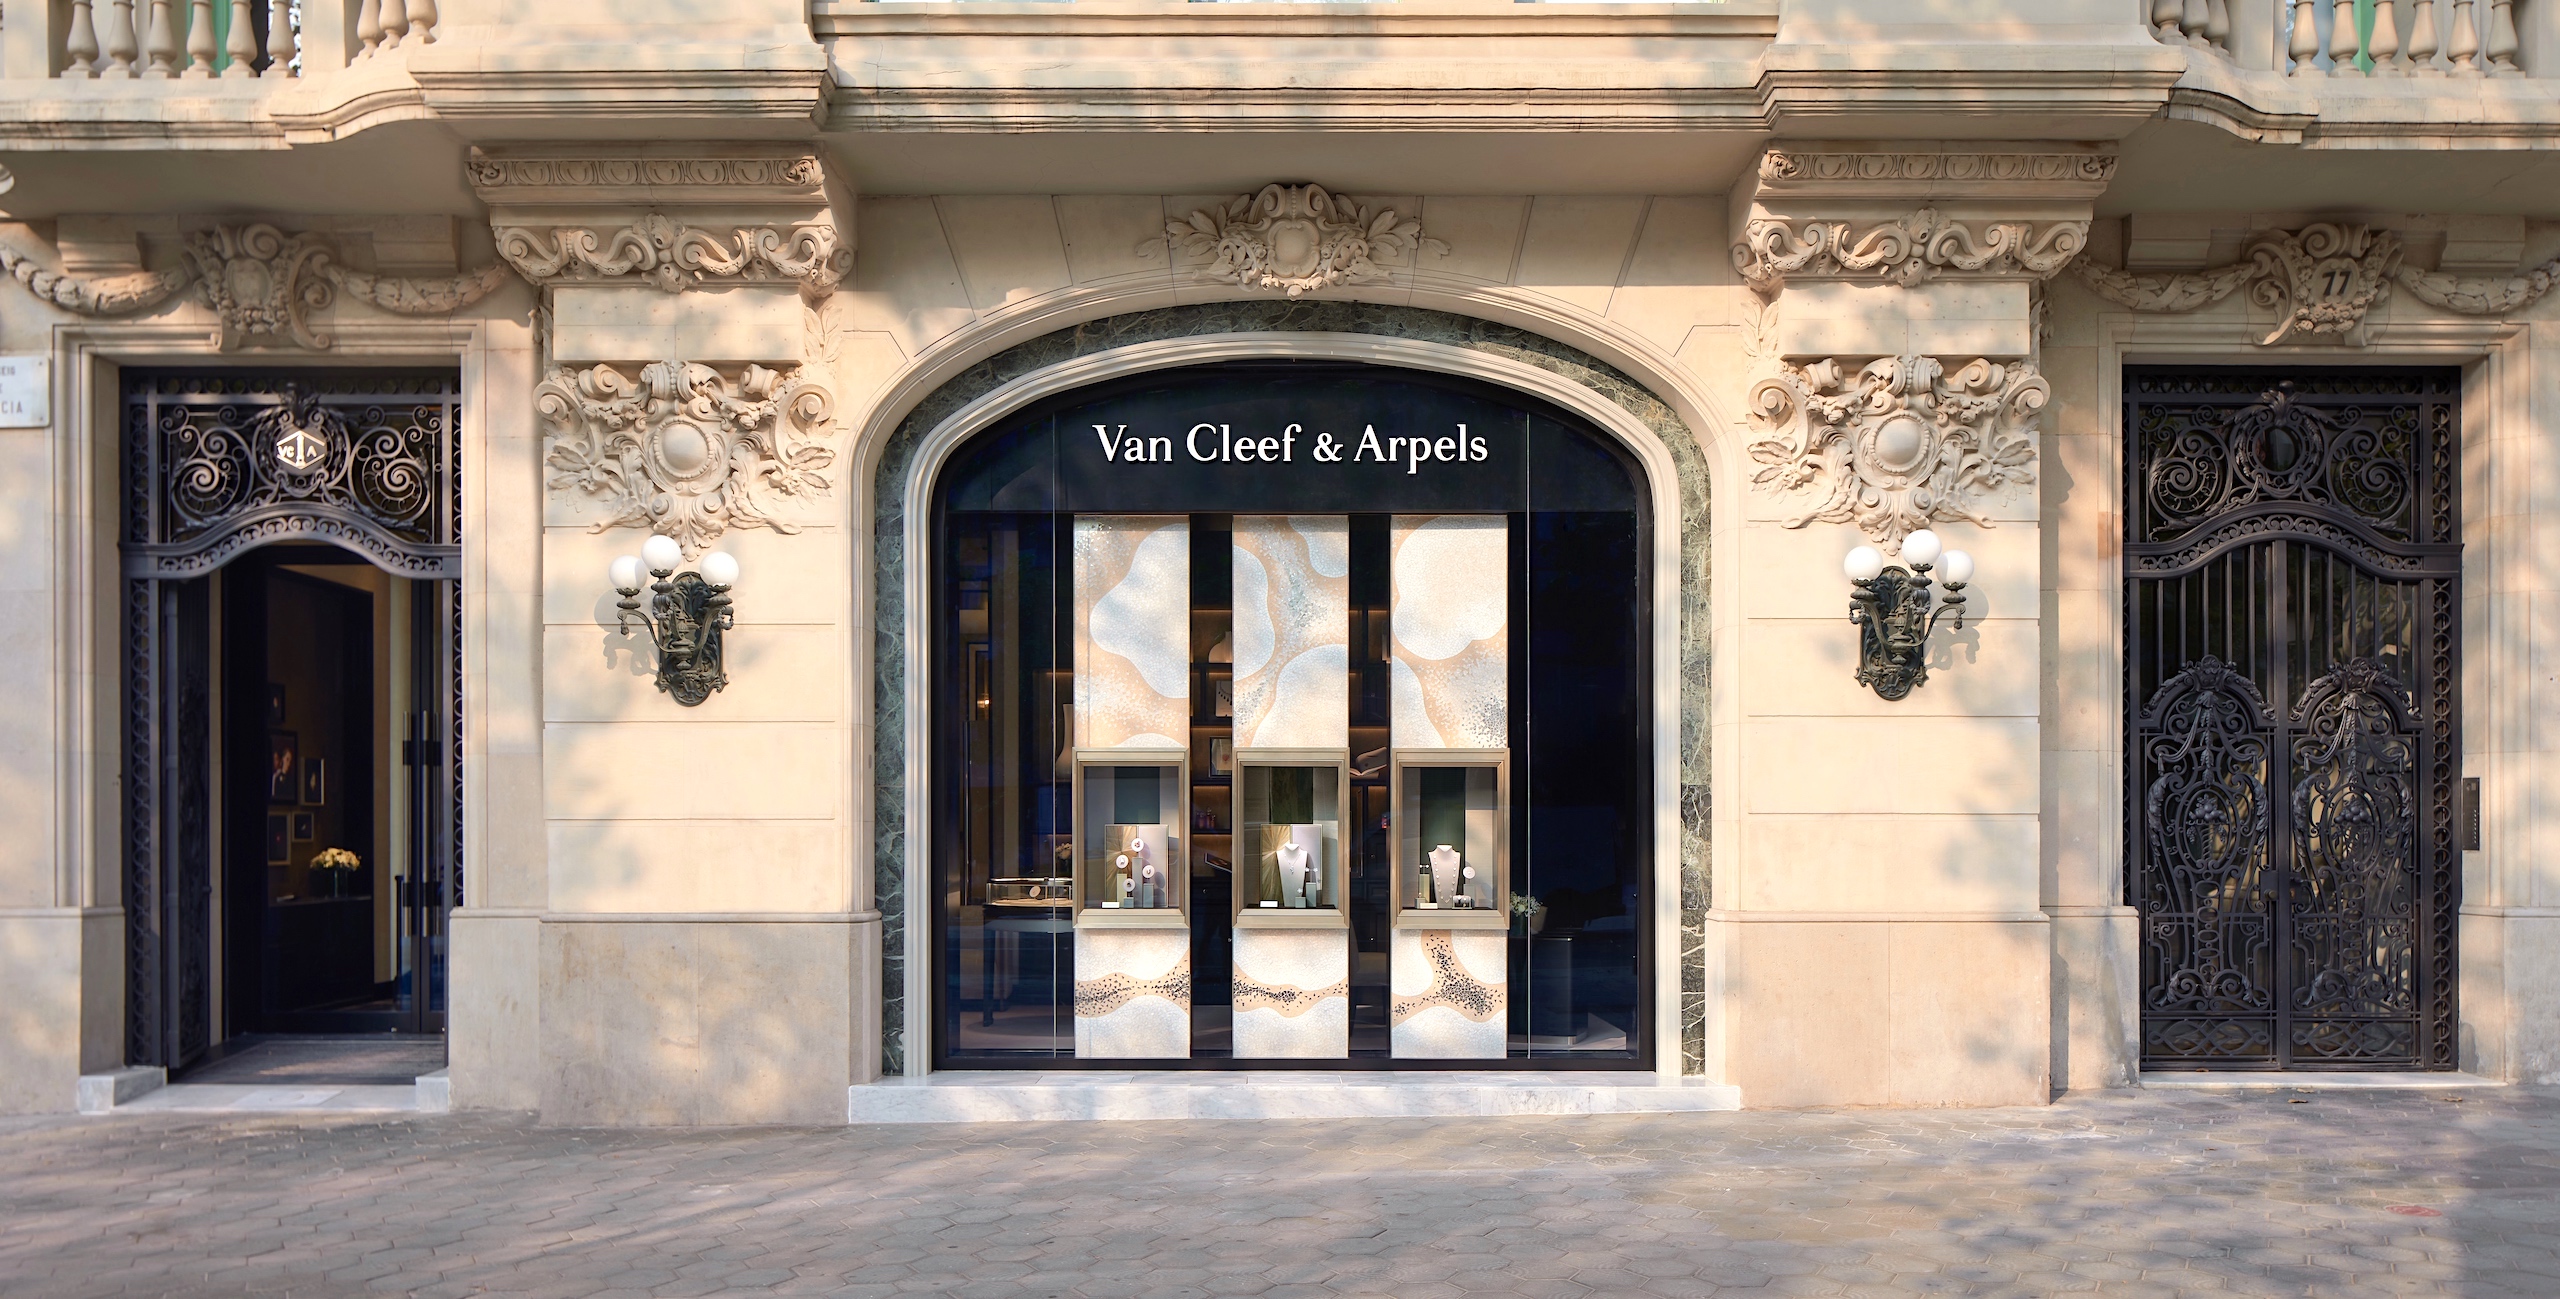 Boutique de Van Cleef & Arpels en Barcelona - cover